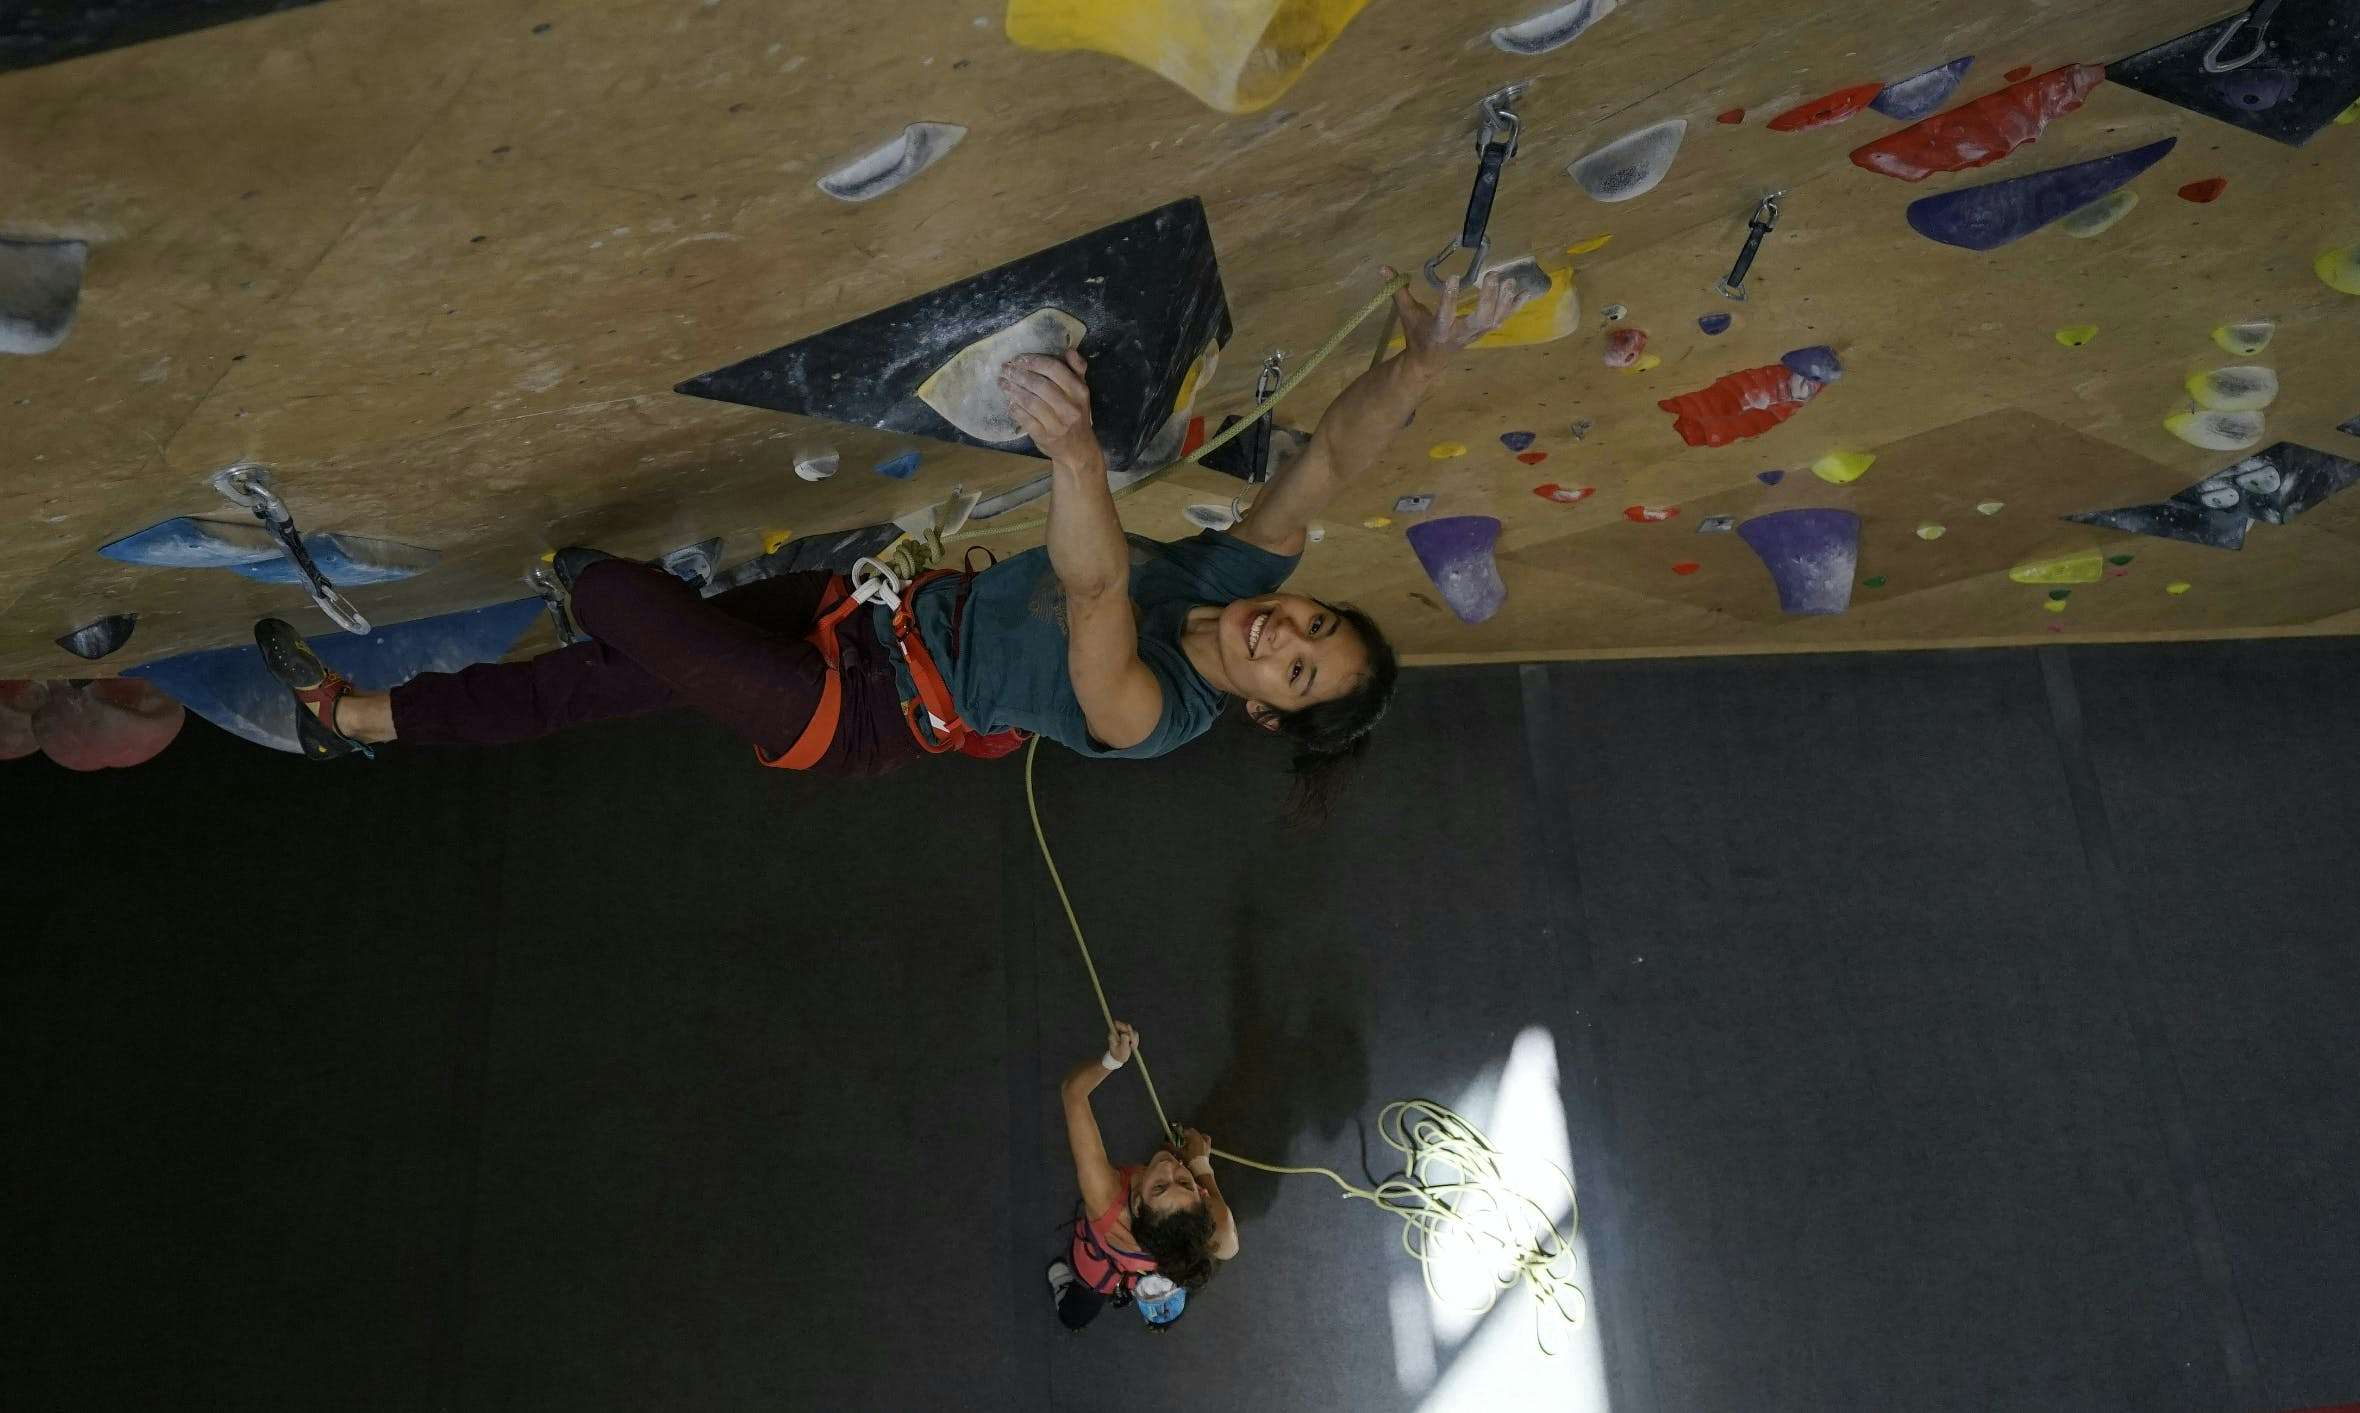 MEC Ambassador Alannah Yip climbing indoors